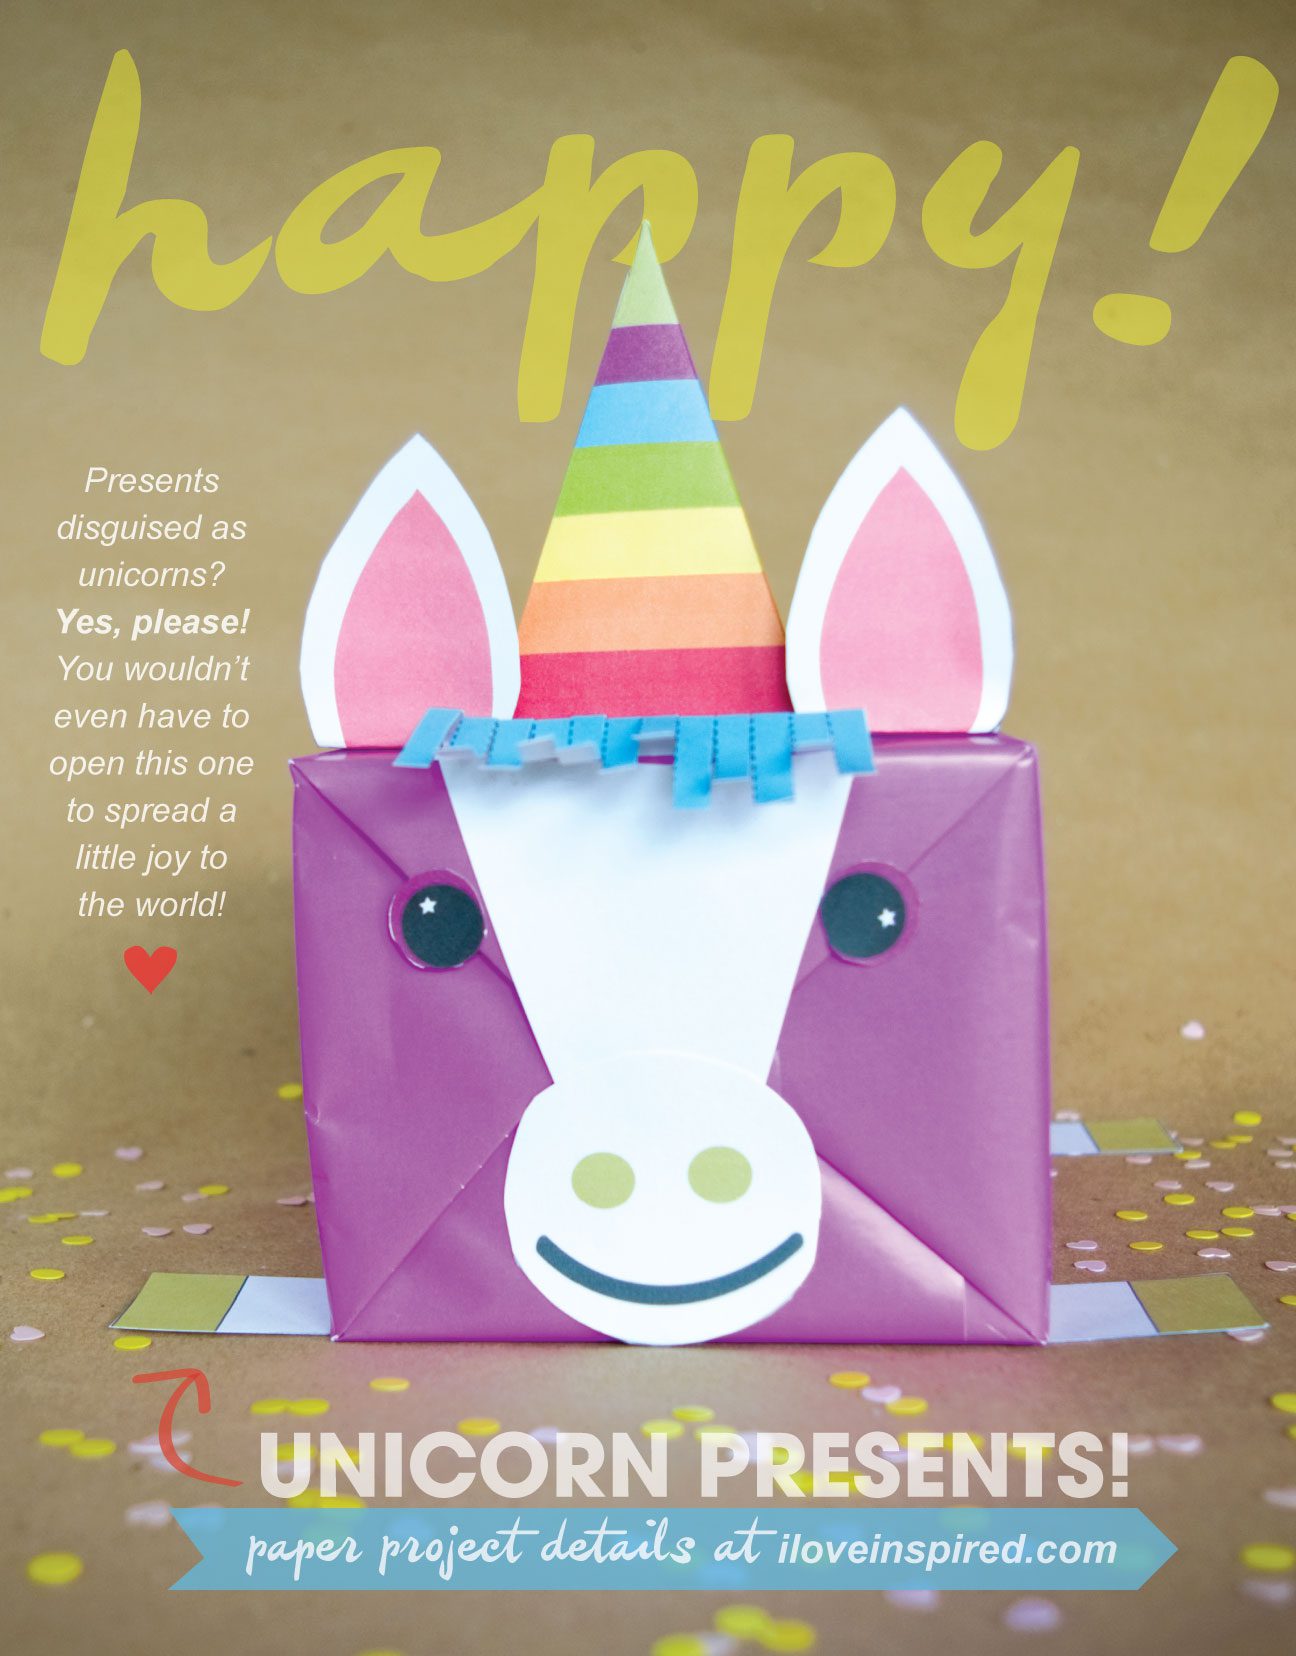 Paper Project: Unicorn Present!